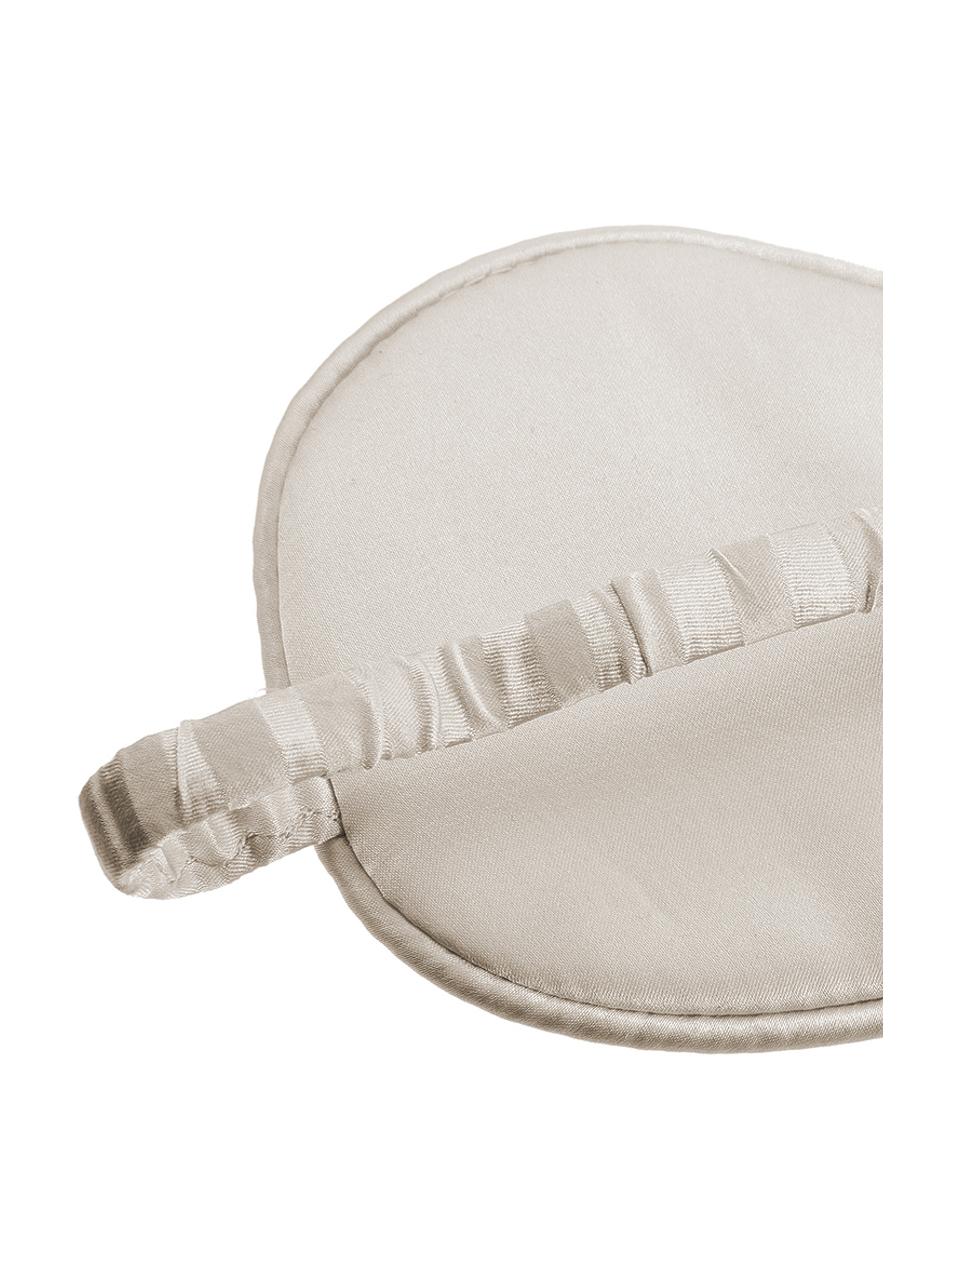 Masque de sommeil en soie Silke, Blanc ivoire, beige, larg. 21 x haut. 9 cm